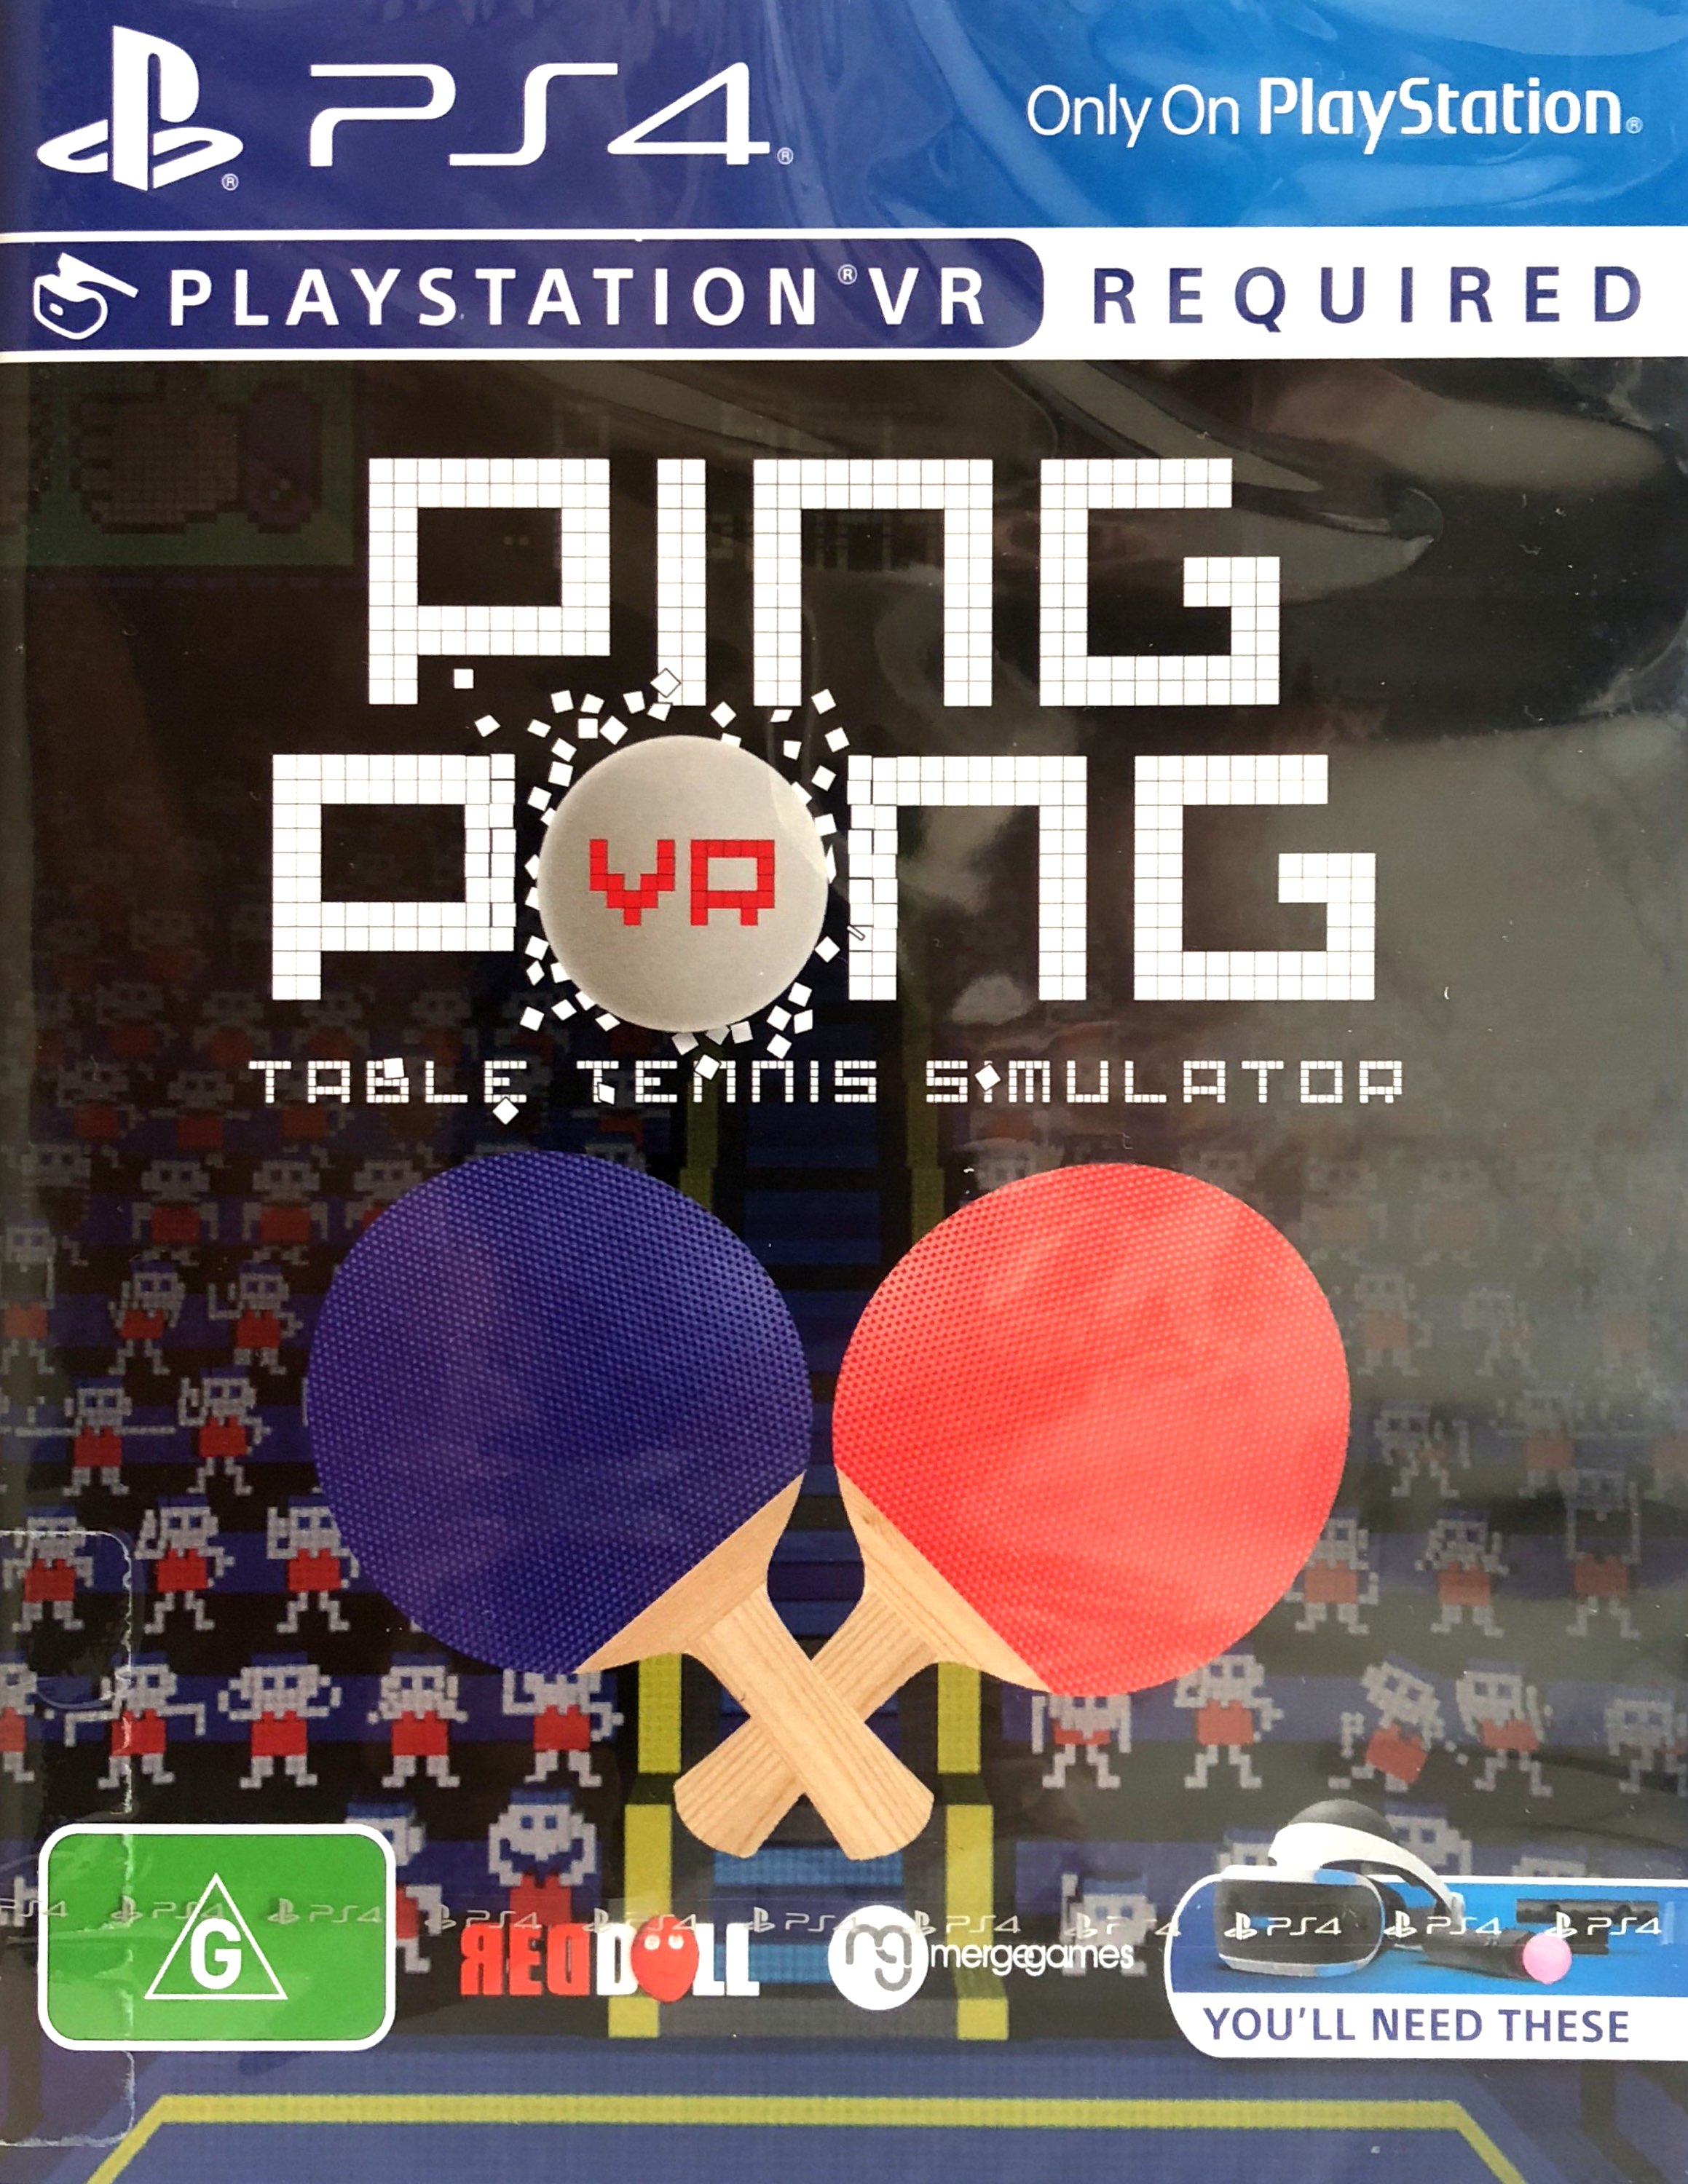 playstation vr ping pong